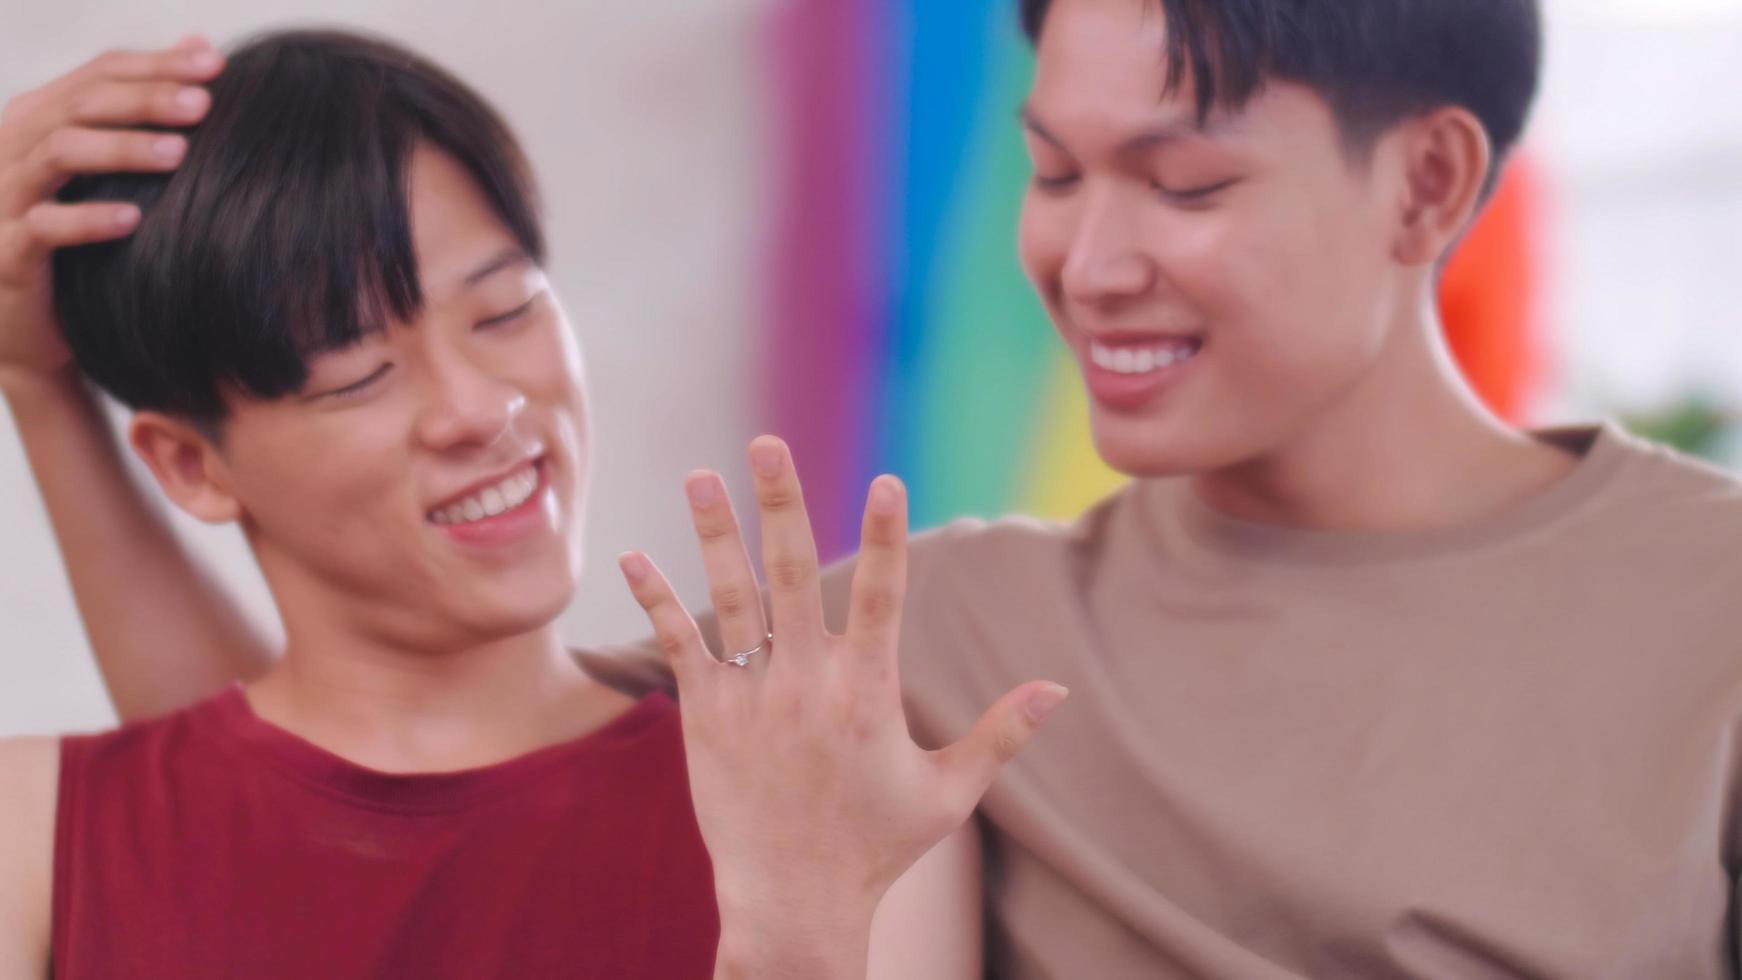 heureux couple asiatique gay exhibant leur alliance. photo